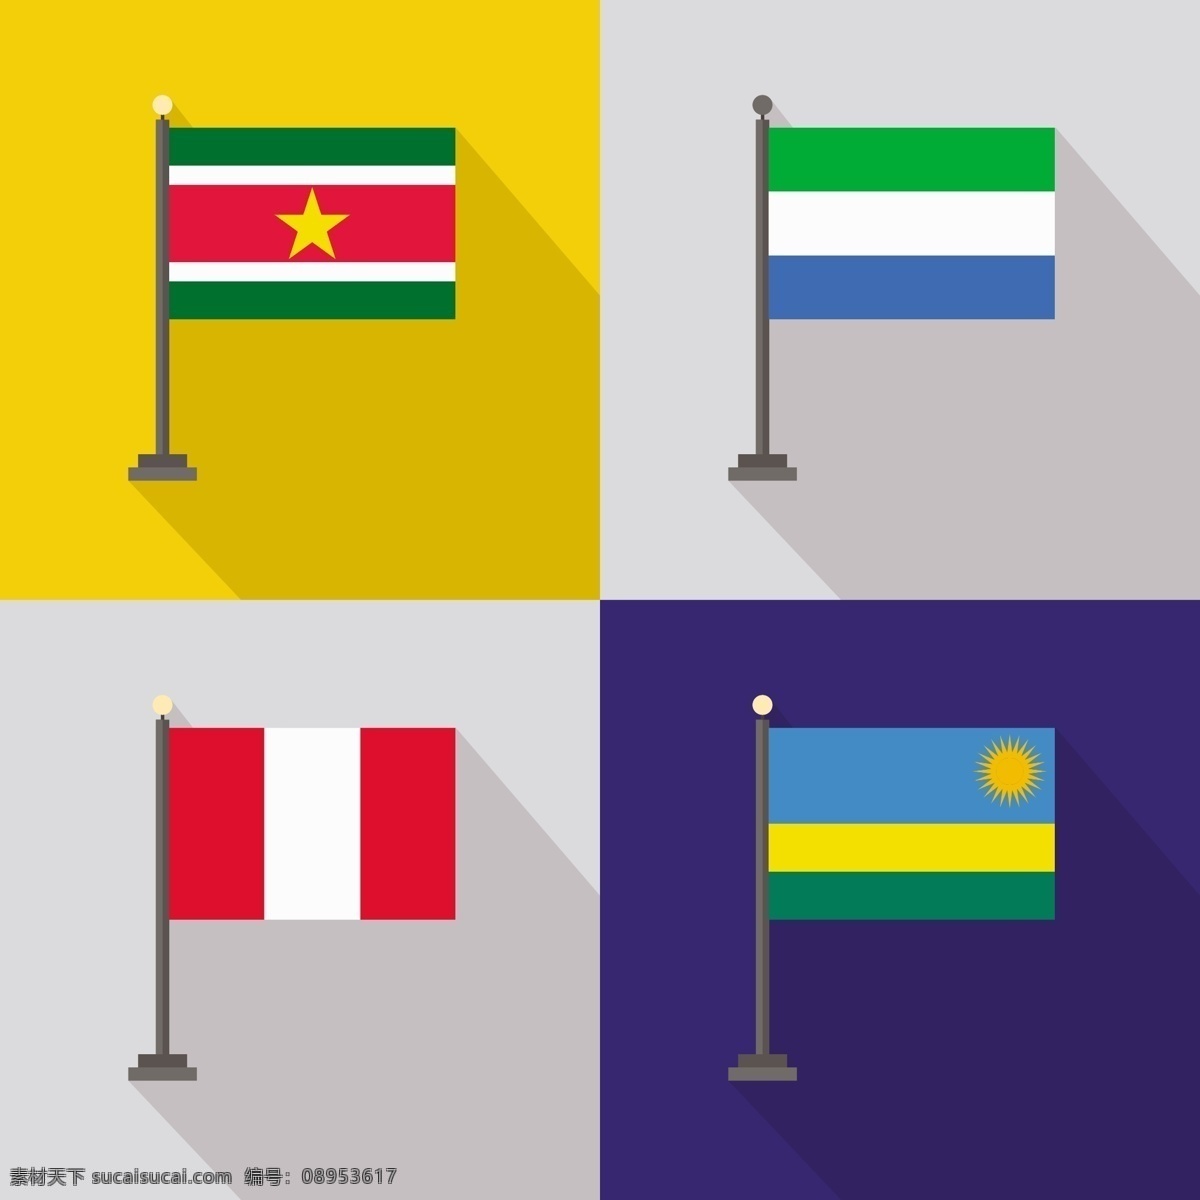 苏里南 塞拉利昂 秘鲁 卢旺达 国旗 世界国旗 国家 国际 爱国 民族 黄色